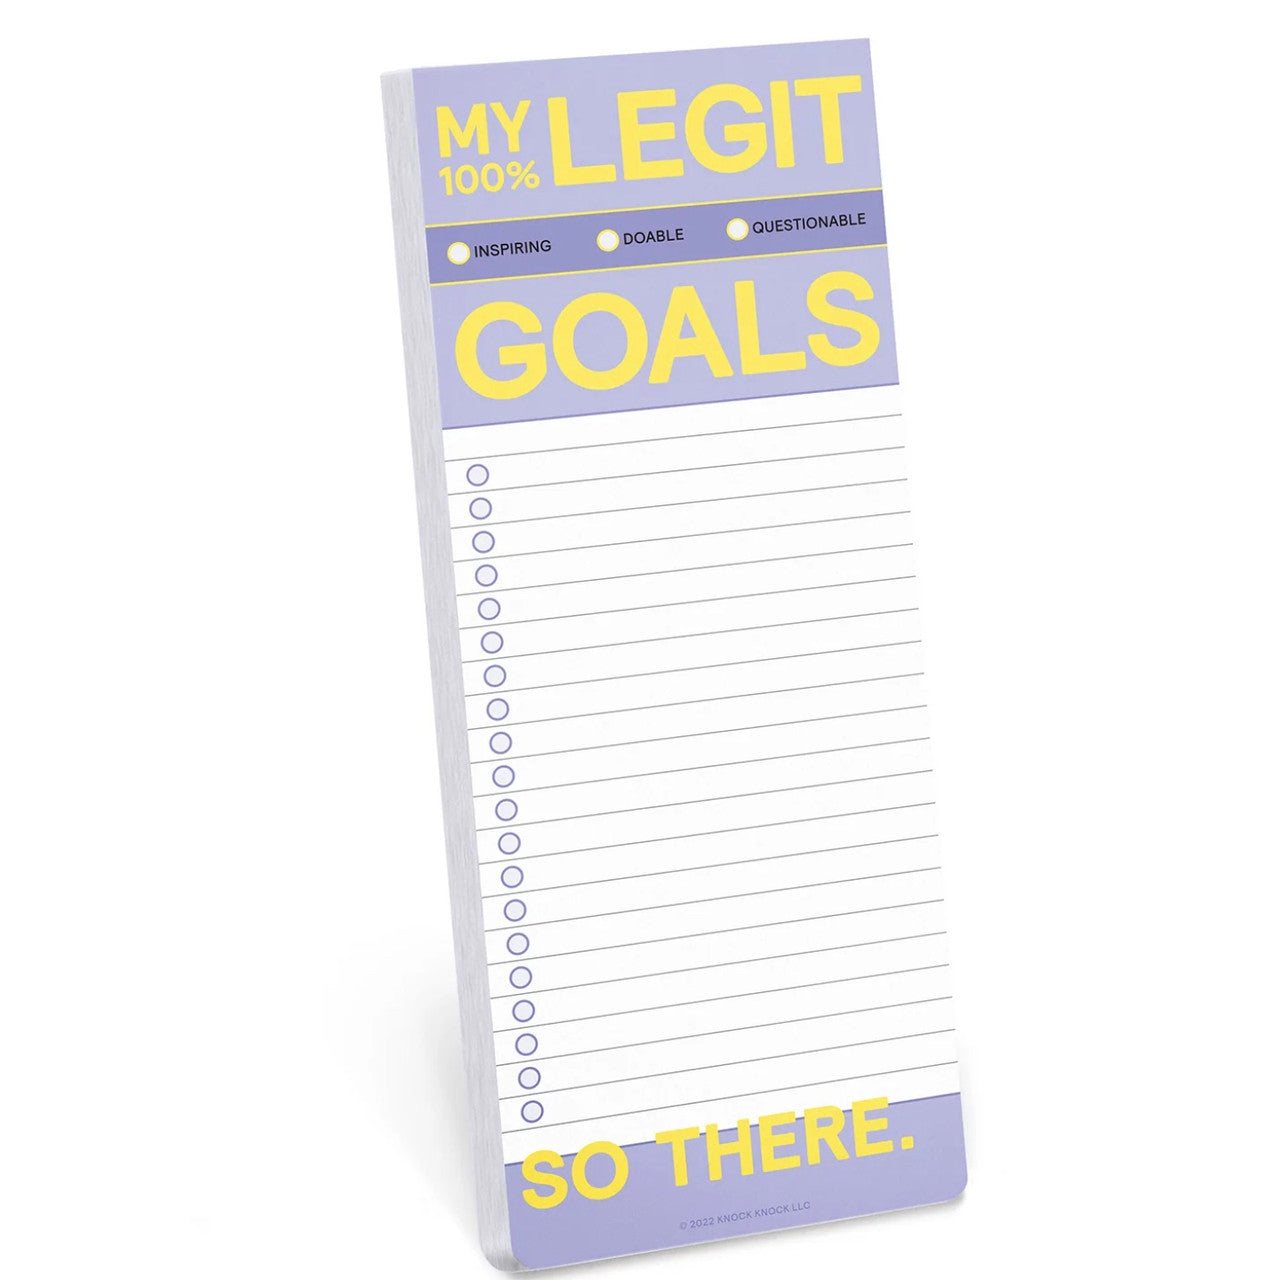 My Legit Goals Pad